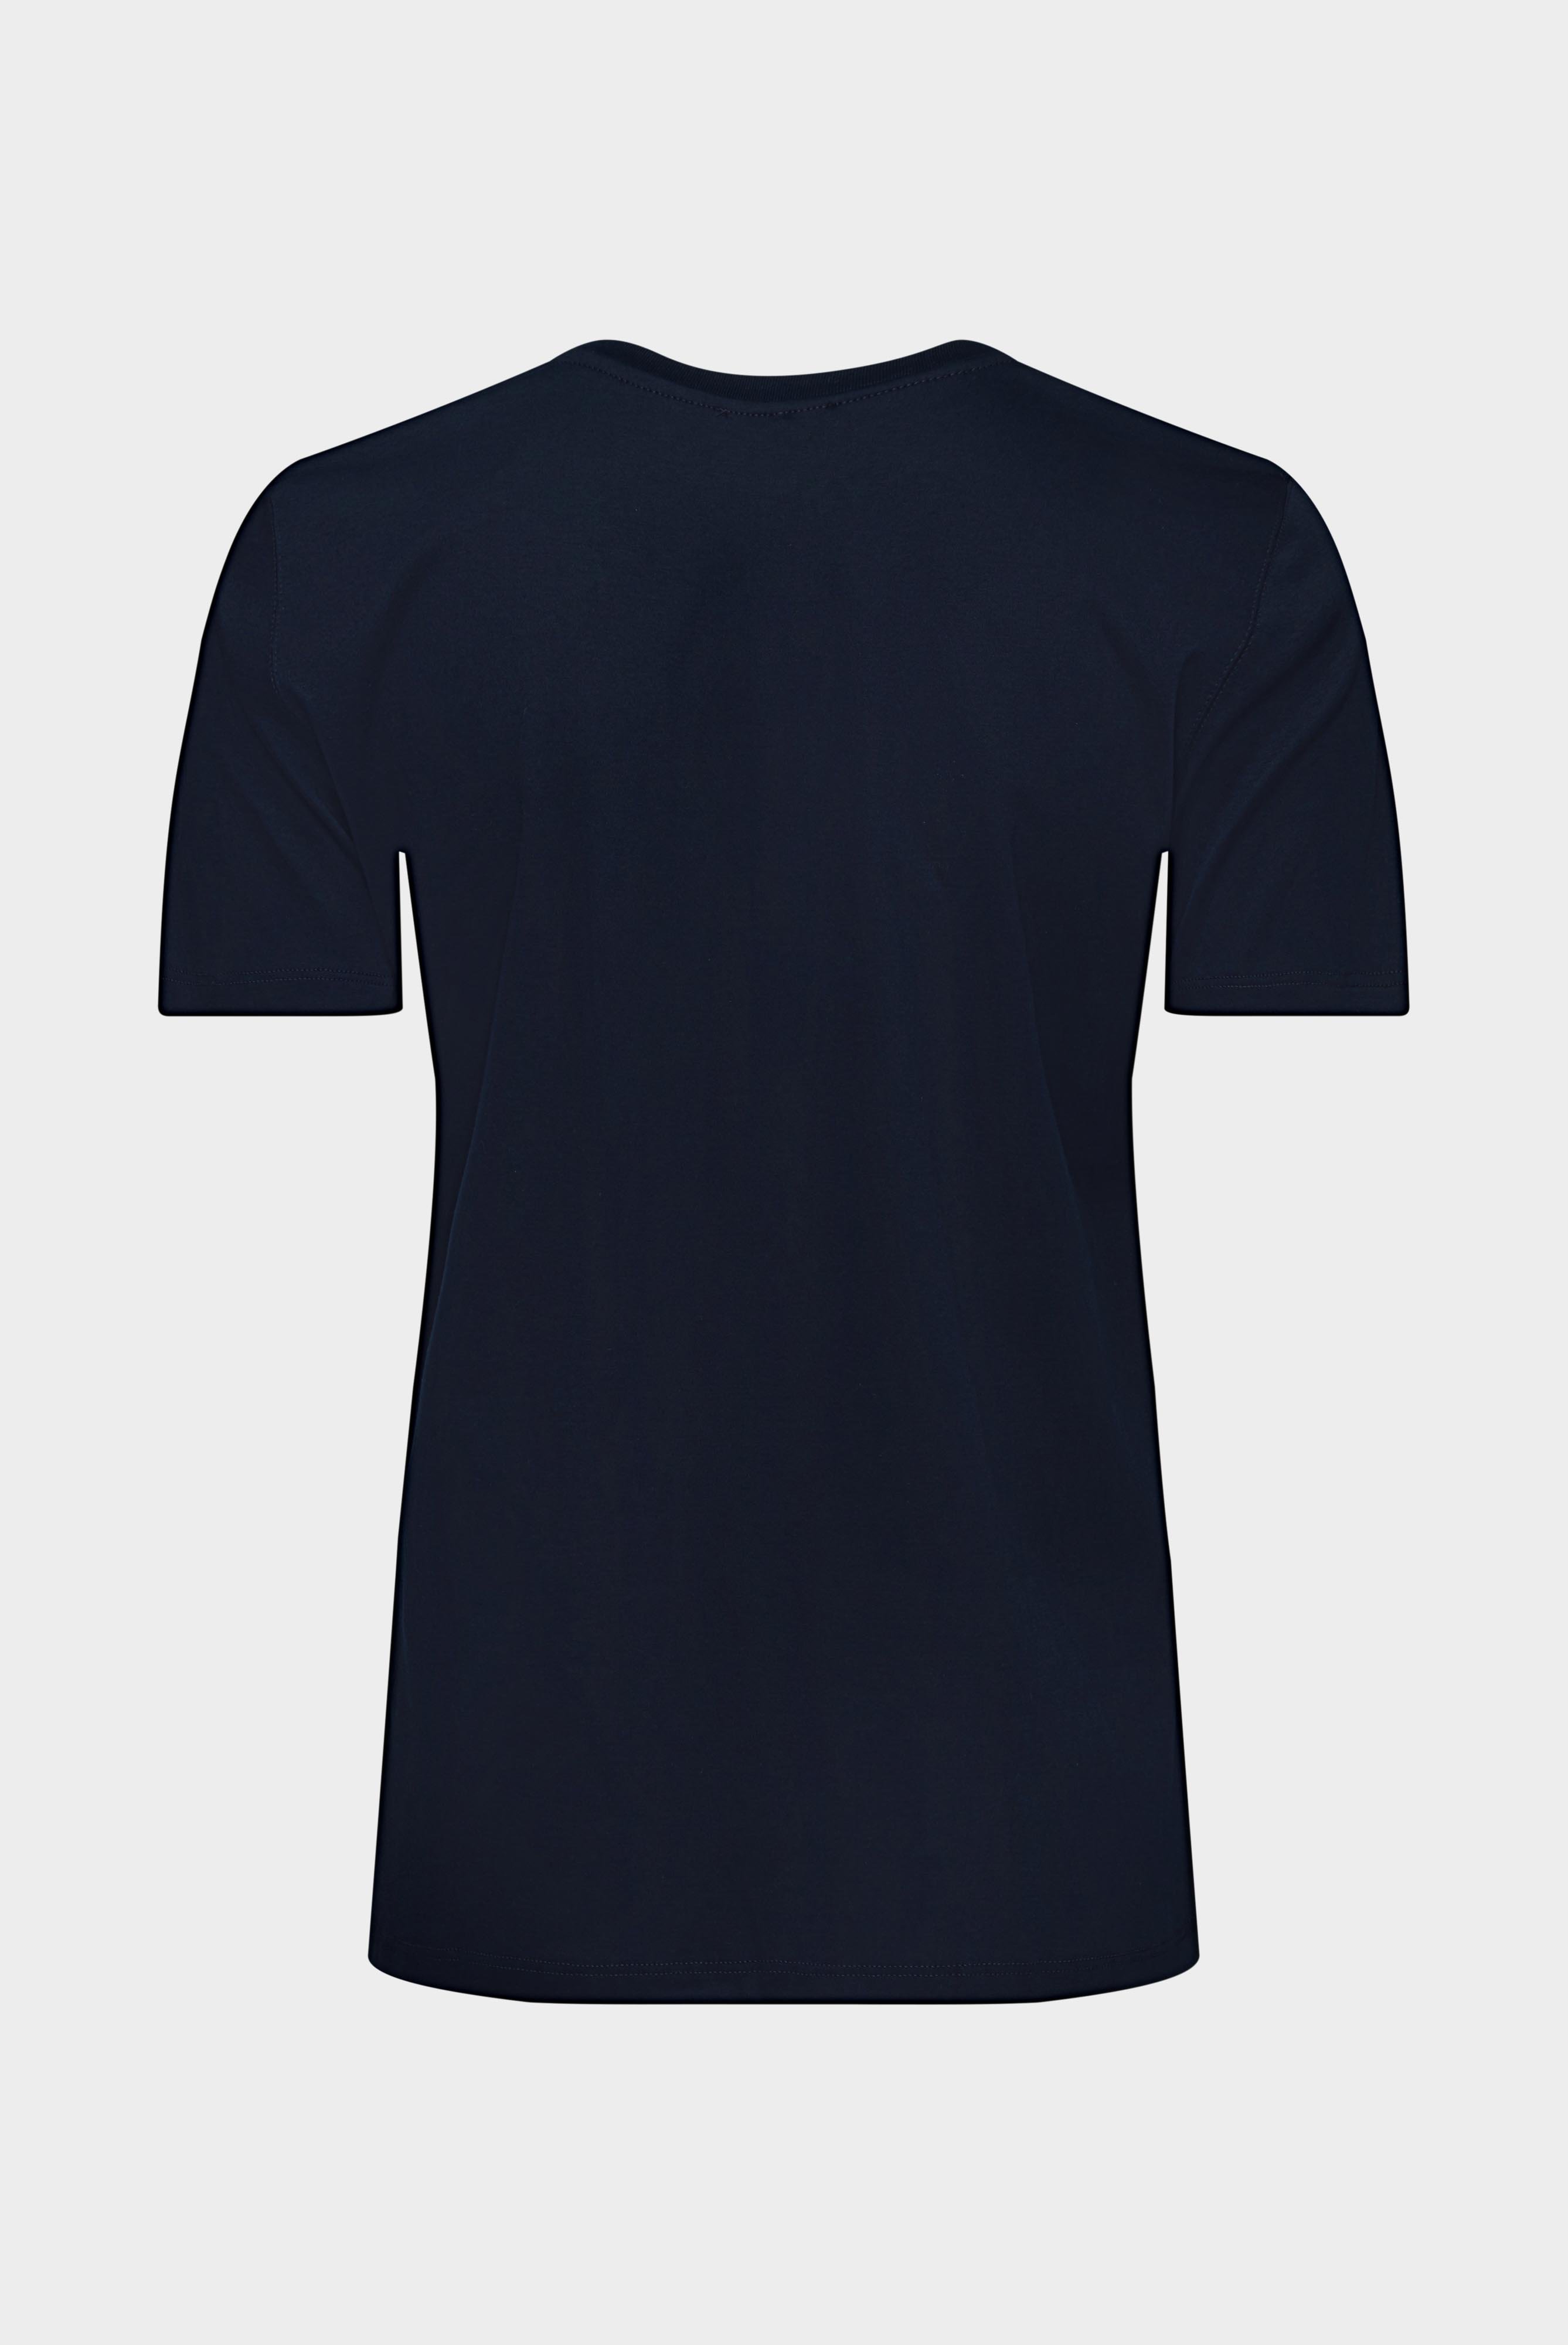 Tops & T-Shirts+Jersey T-Shirt+05.6384.18.180031.790.46